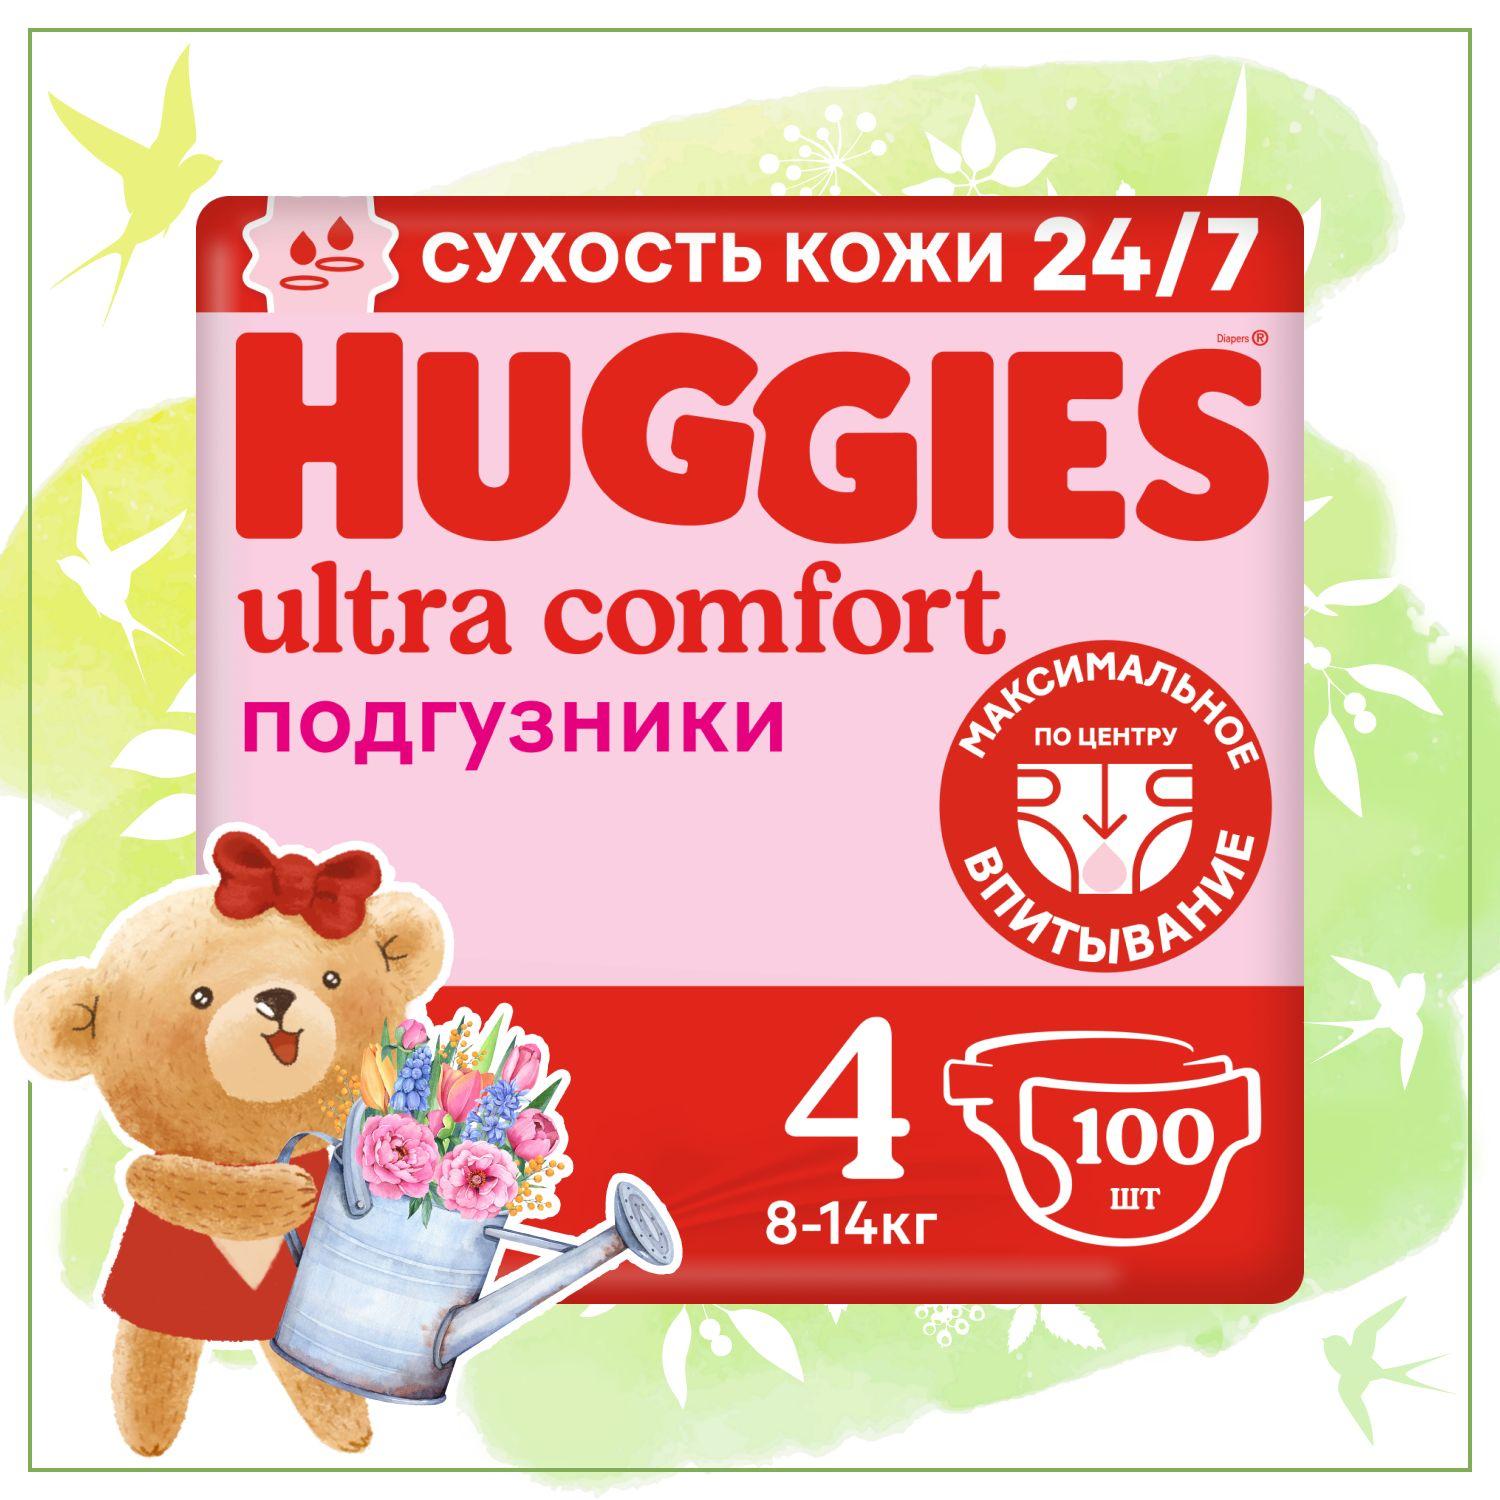 Подгузники Huggies Ultra Comfort для девочек 4 L размер, 8-14 кг, 100 шт